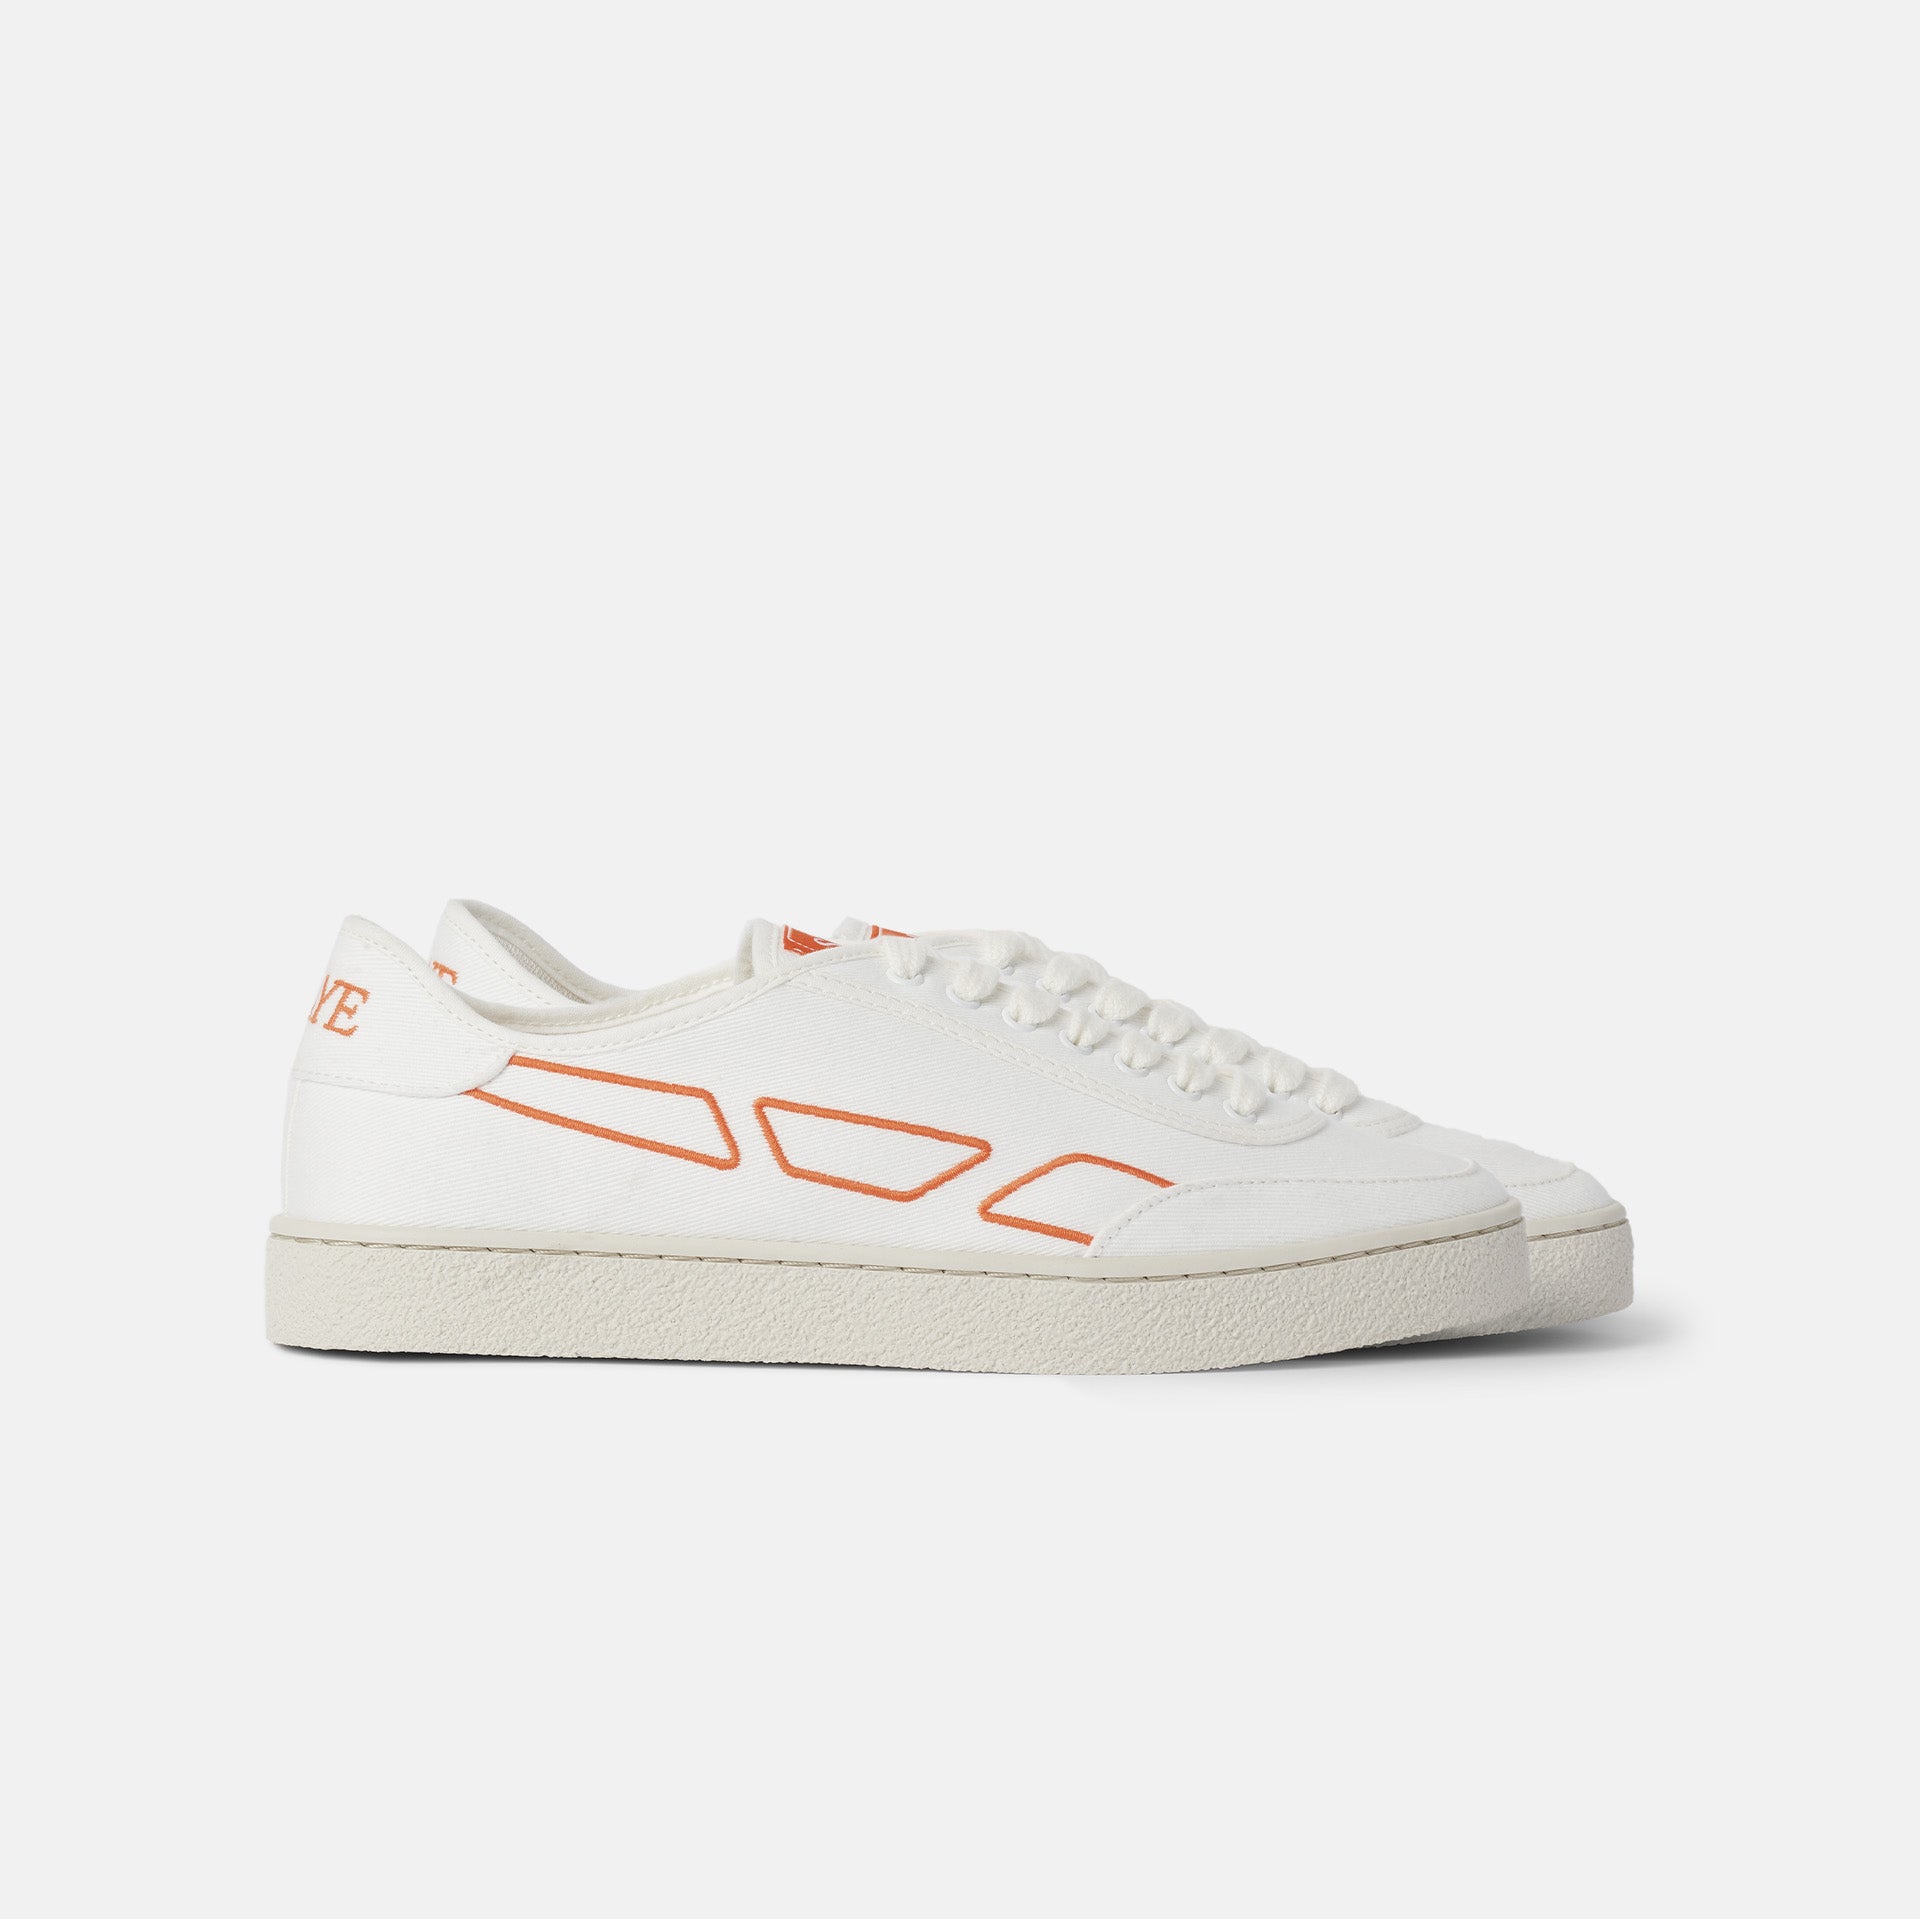 Modelo '65 Orange - Vegan Sneakers - SAYE